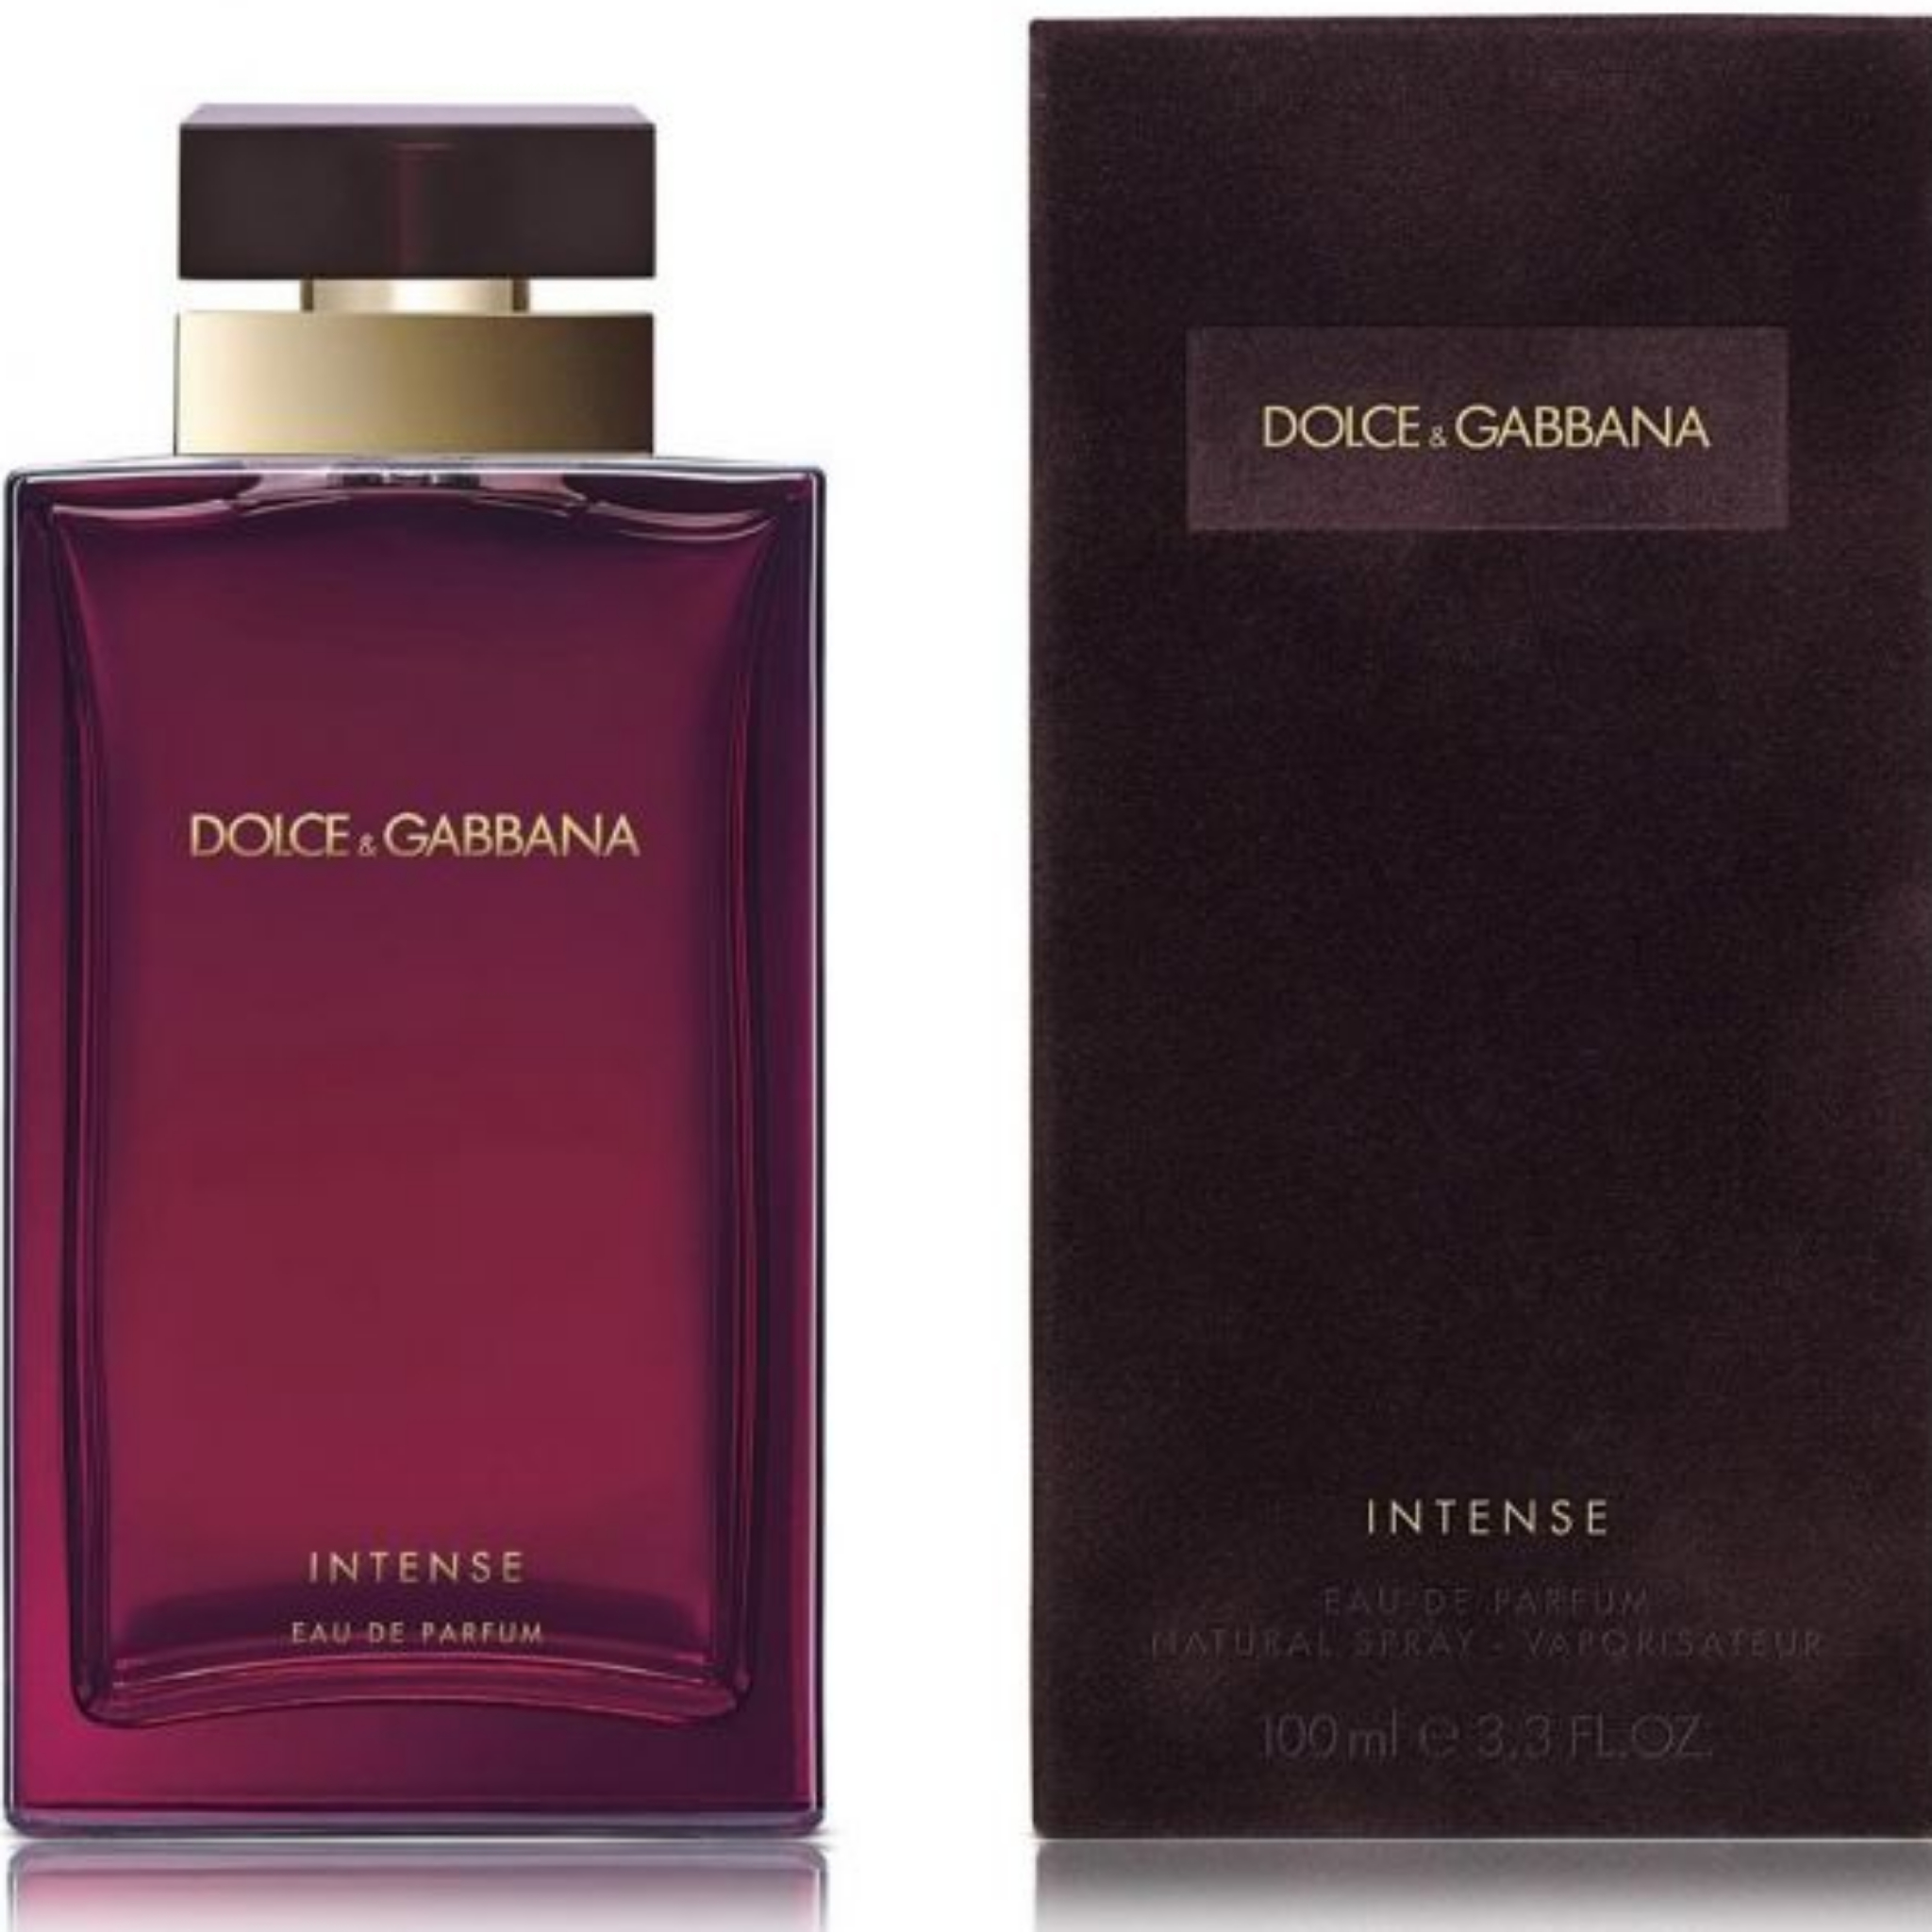 Дольче габбана парфюм новинка. Dolce & Gabbana pour femme intense EDP, 100 ml. Dolce & Gabbana pour femme 100 мл. Дольче Габбана Интенс 100. Духи Дольче Габбана Пур Фемме Интенс.